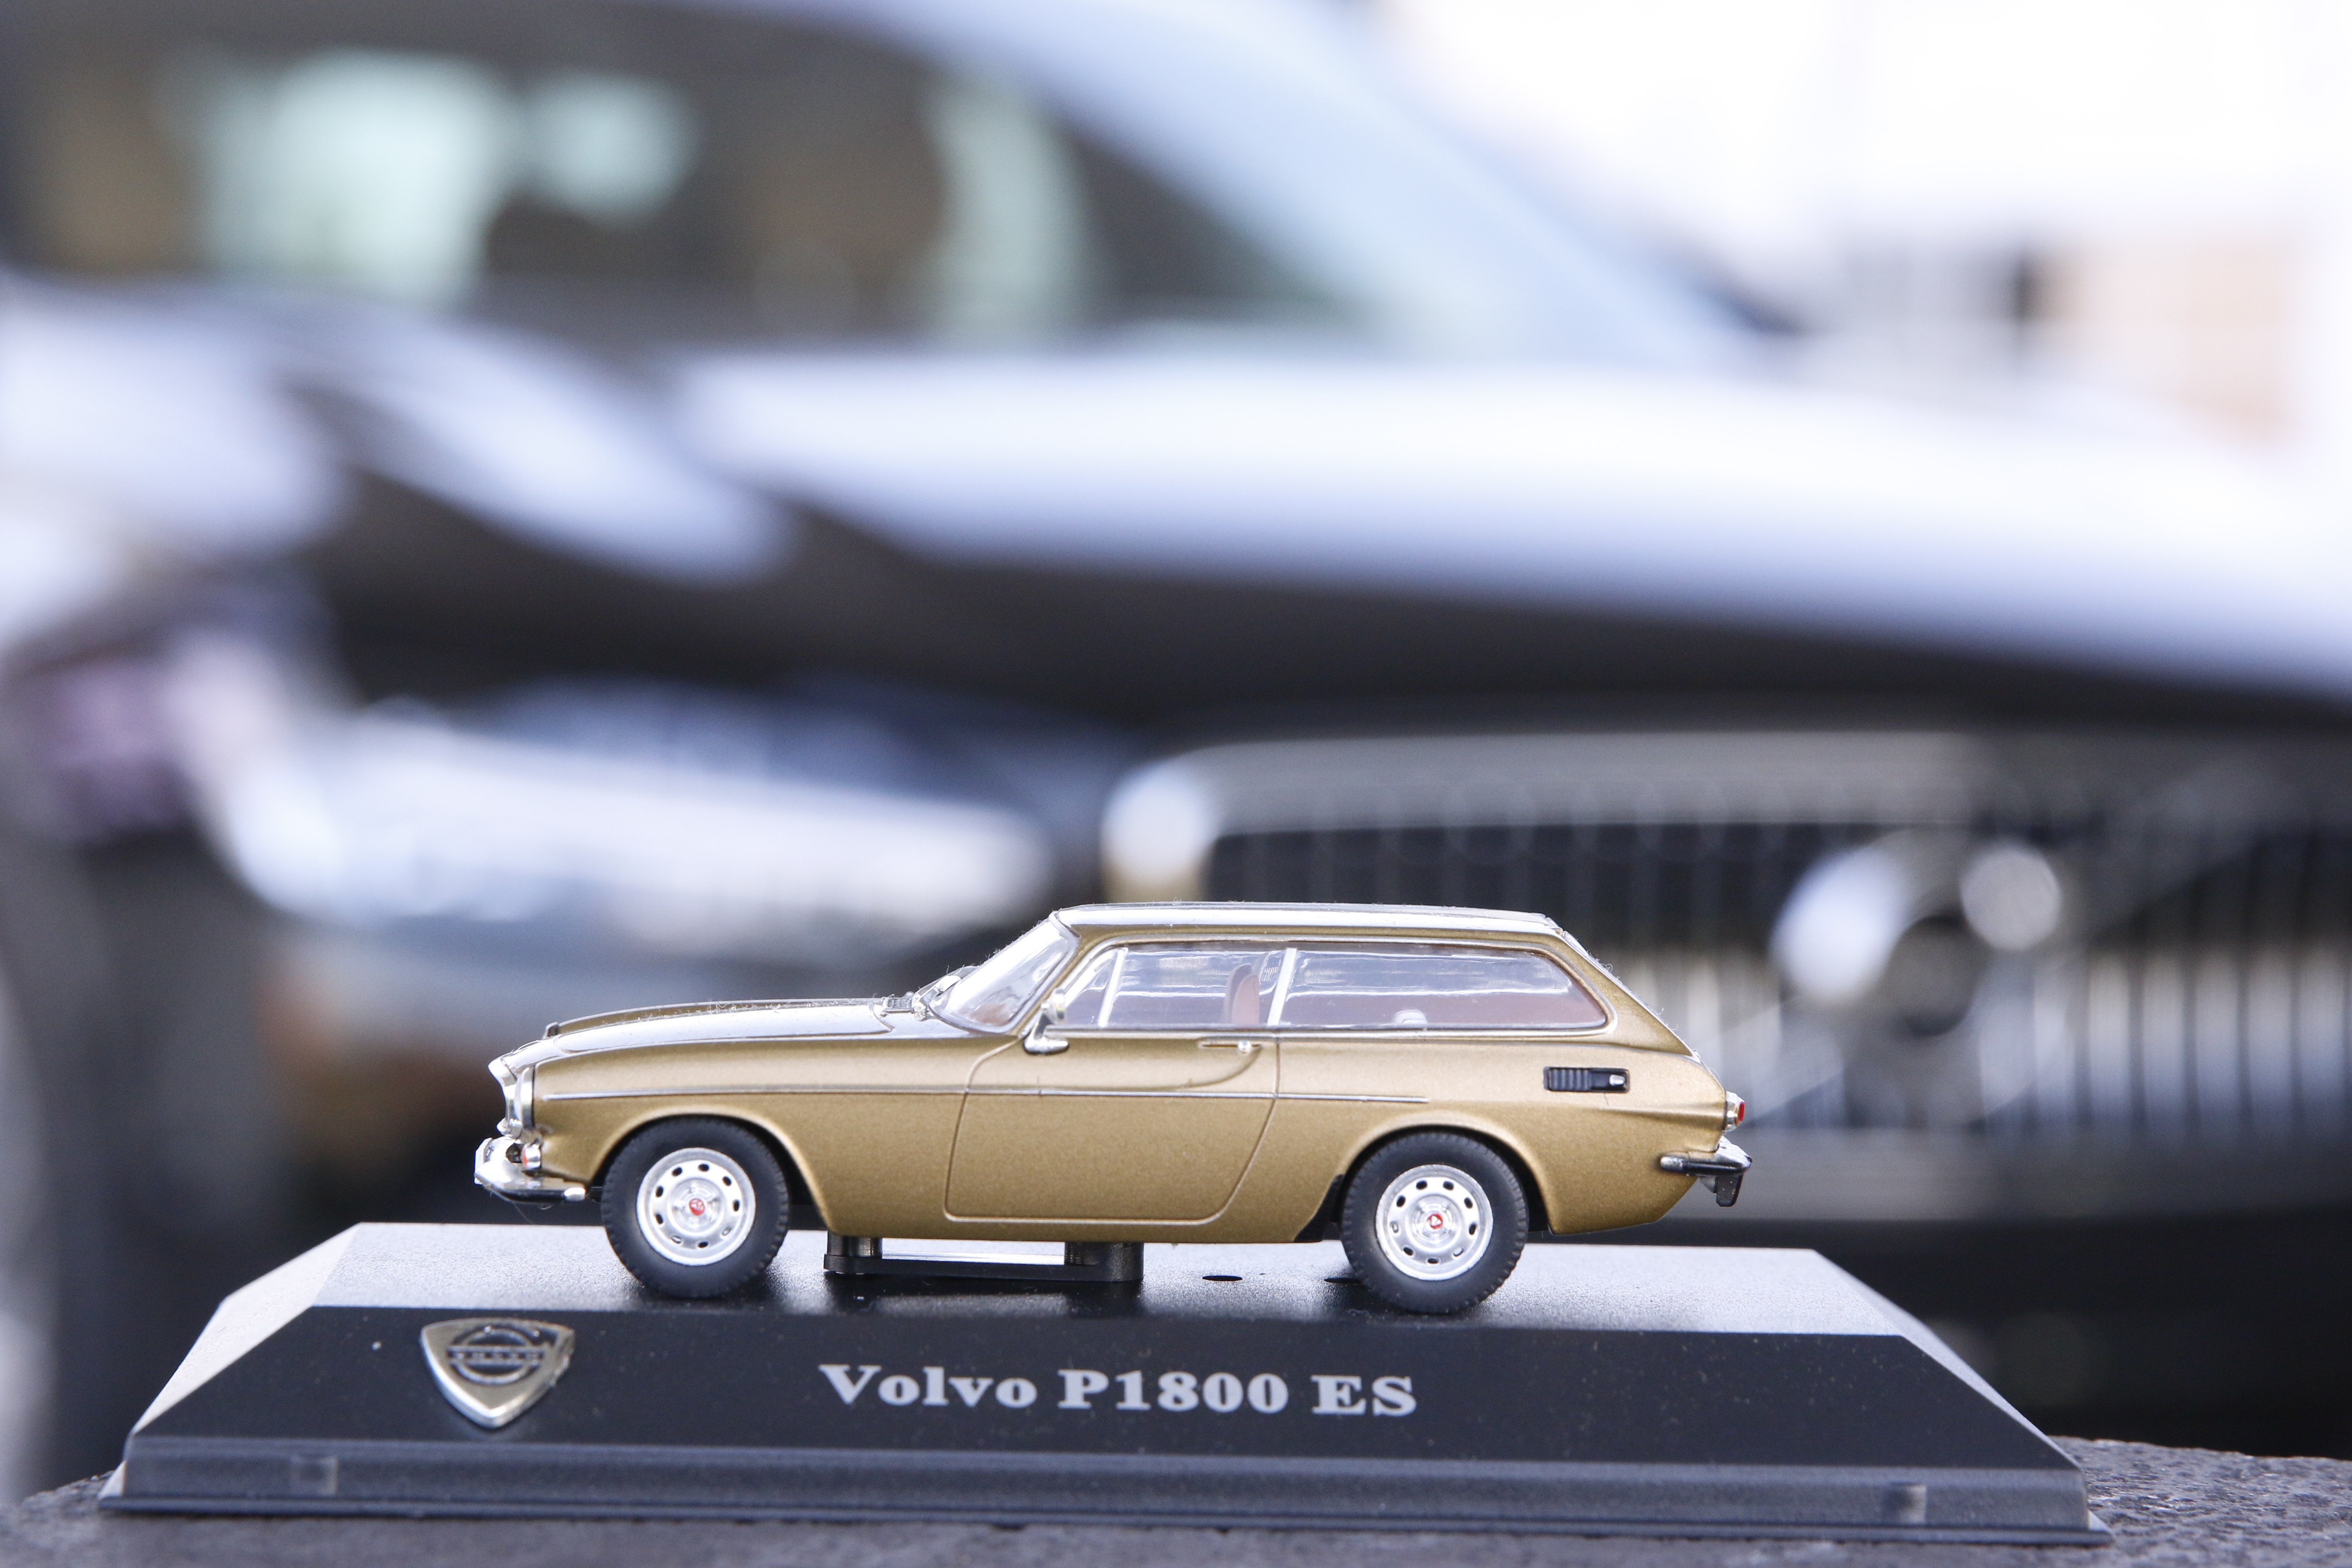 Vervormen ruimte Begraafplaats De geschiedenis van Volvo in miniatuur - Automobilia